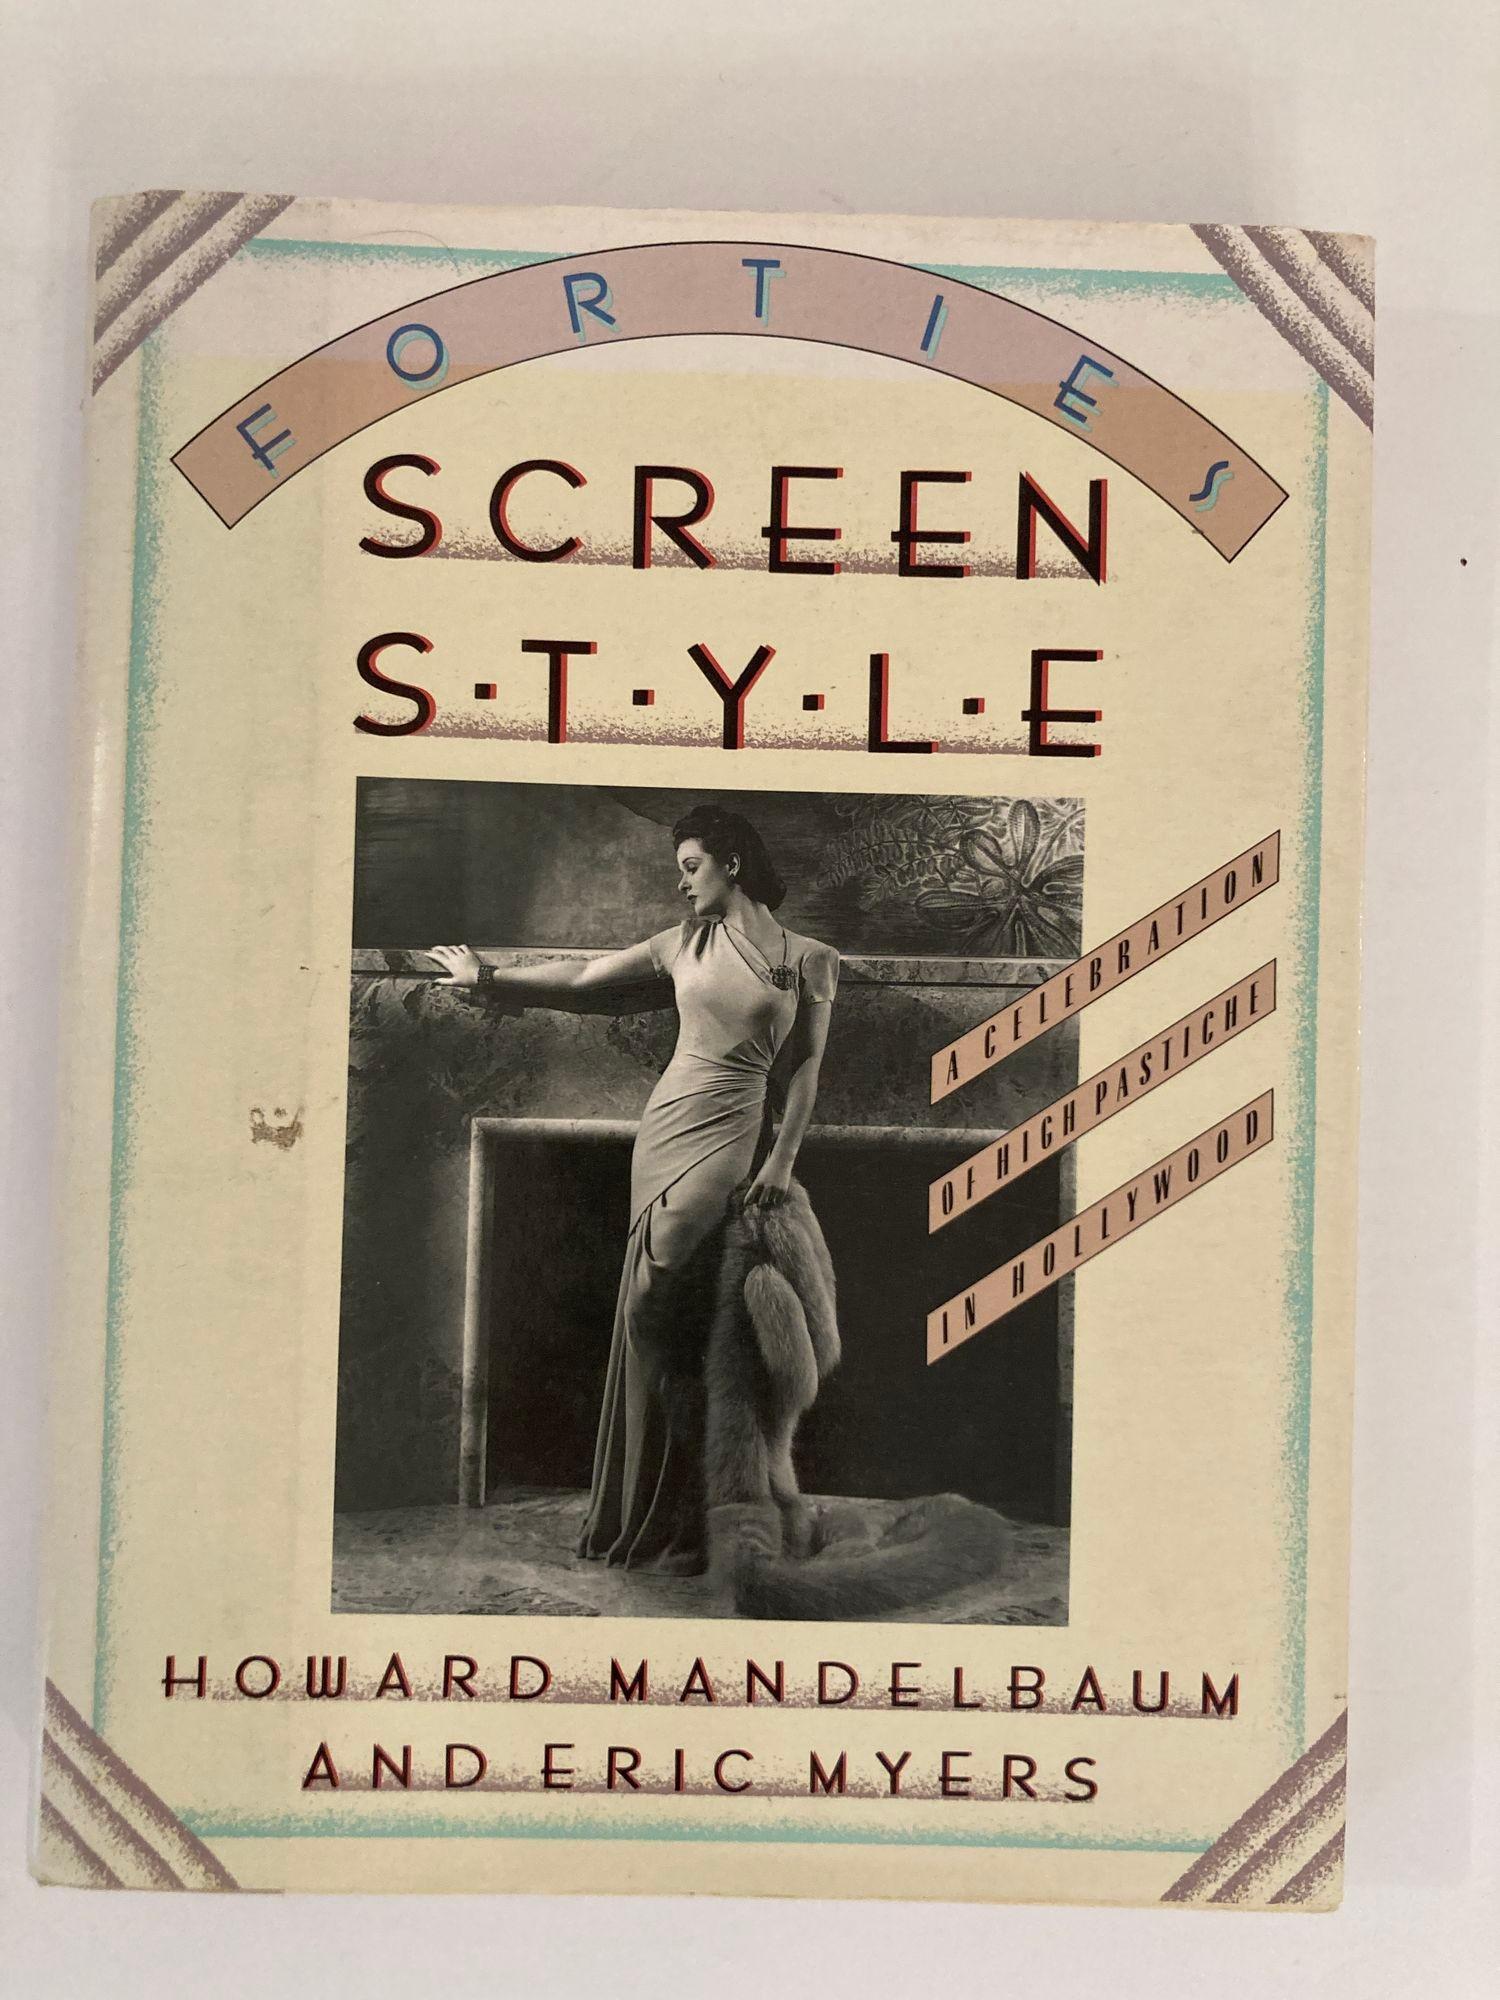 Forties Screen Style: Eine Feier des High Pastiche in Hollywood von Howard Mandelbaum, Howard Eric Myers.
Veröffentlicht im Jahr 1989. St. Martin's Press.
ERSTE AUSGABE. ERSTDRUCK.
209 Seiten.
Gebundenes Sammlerstück mit